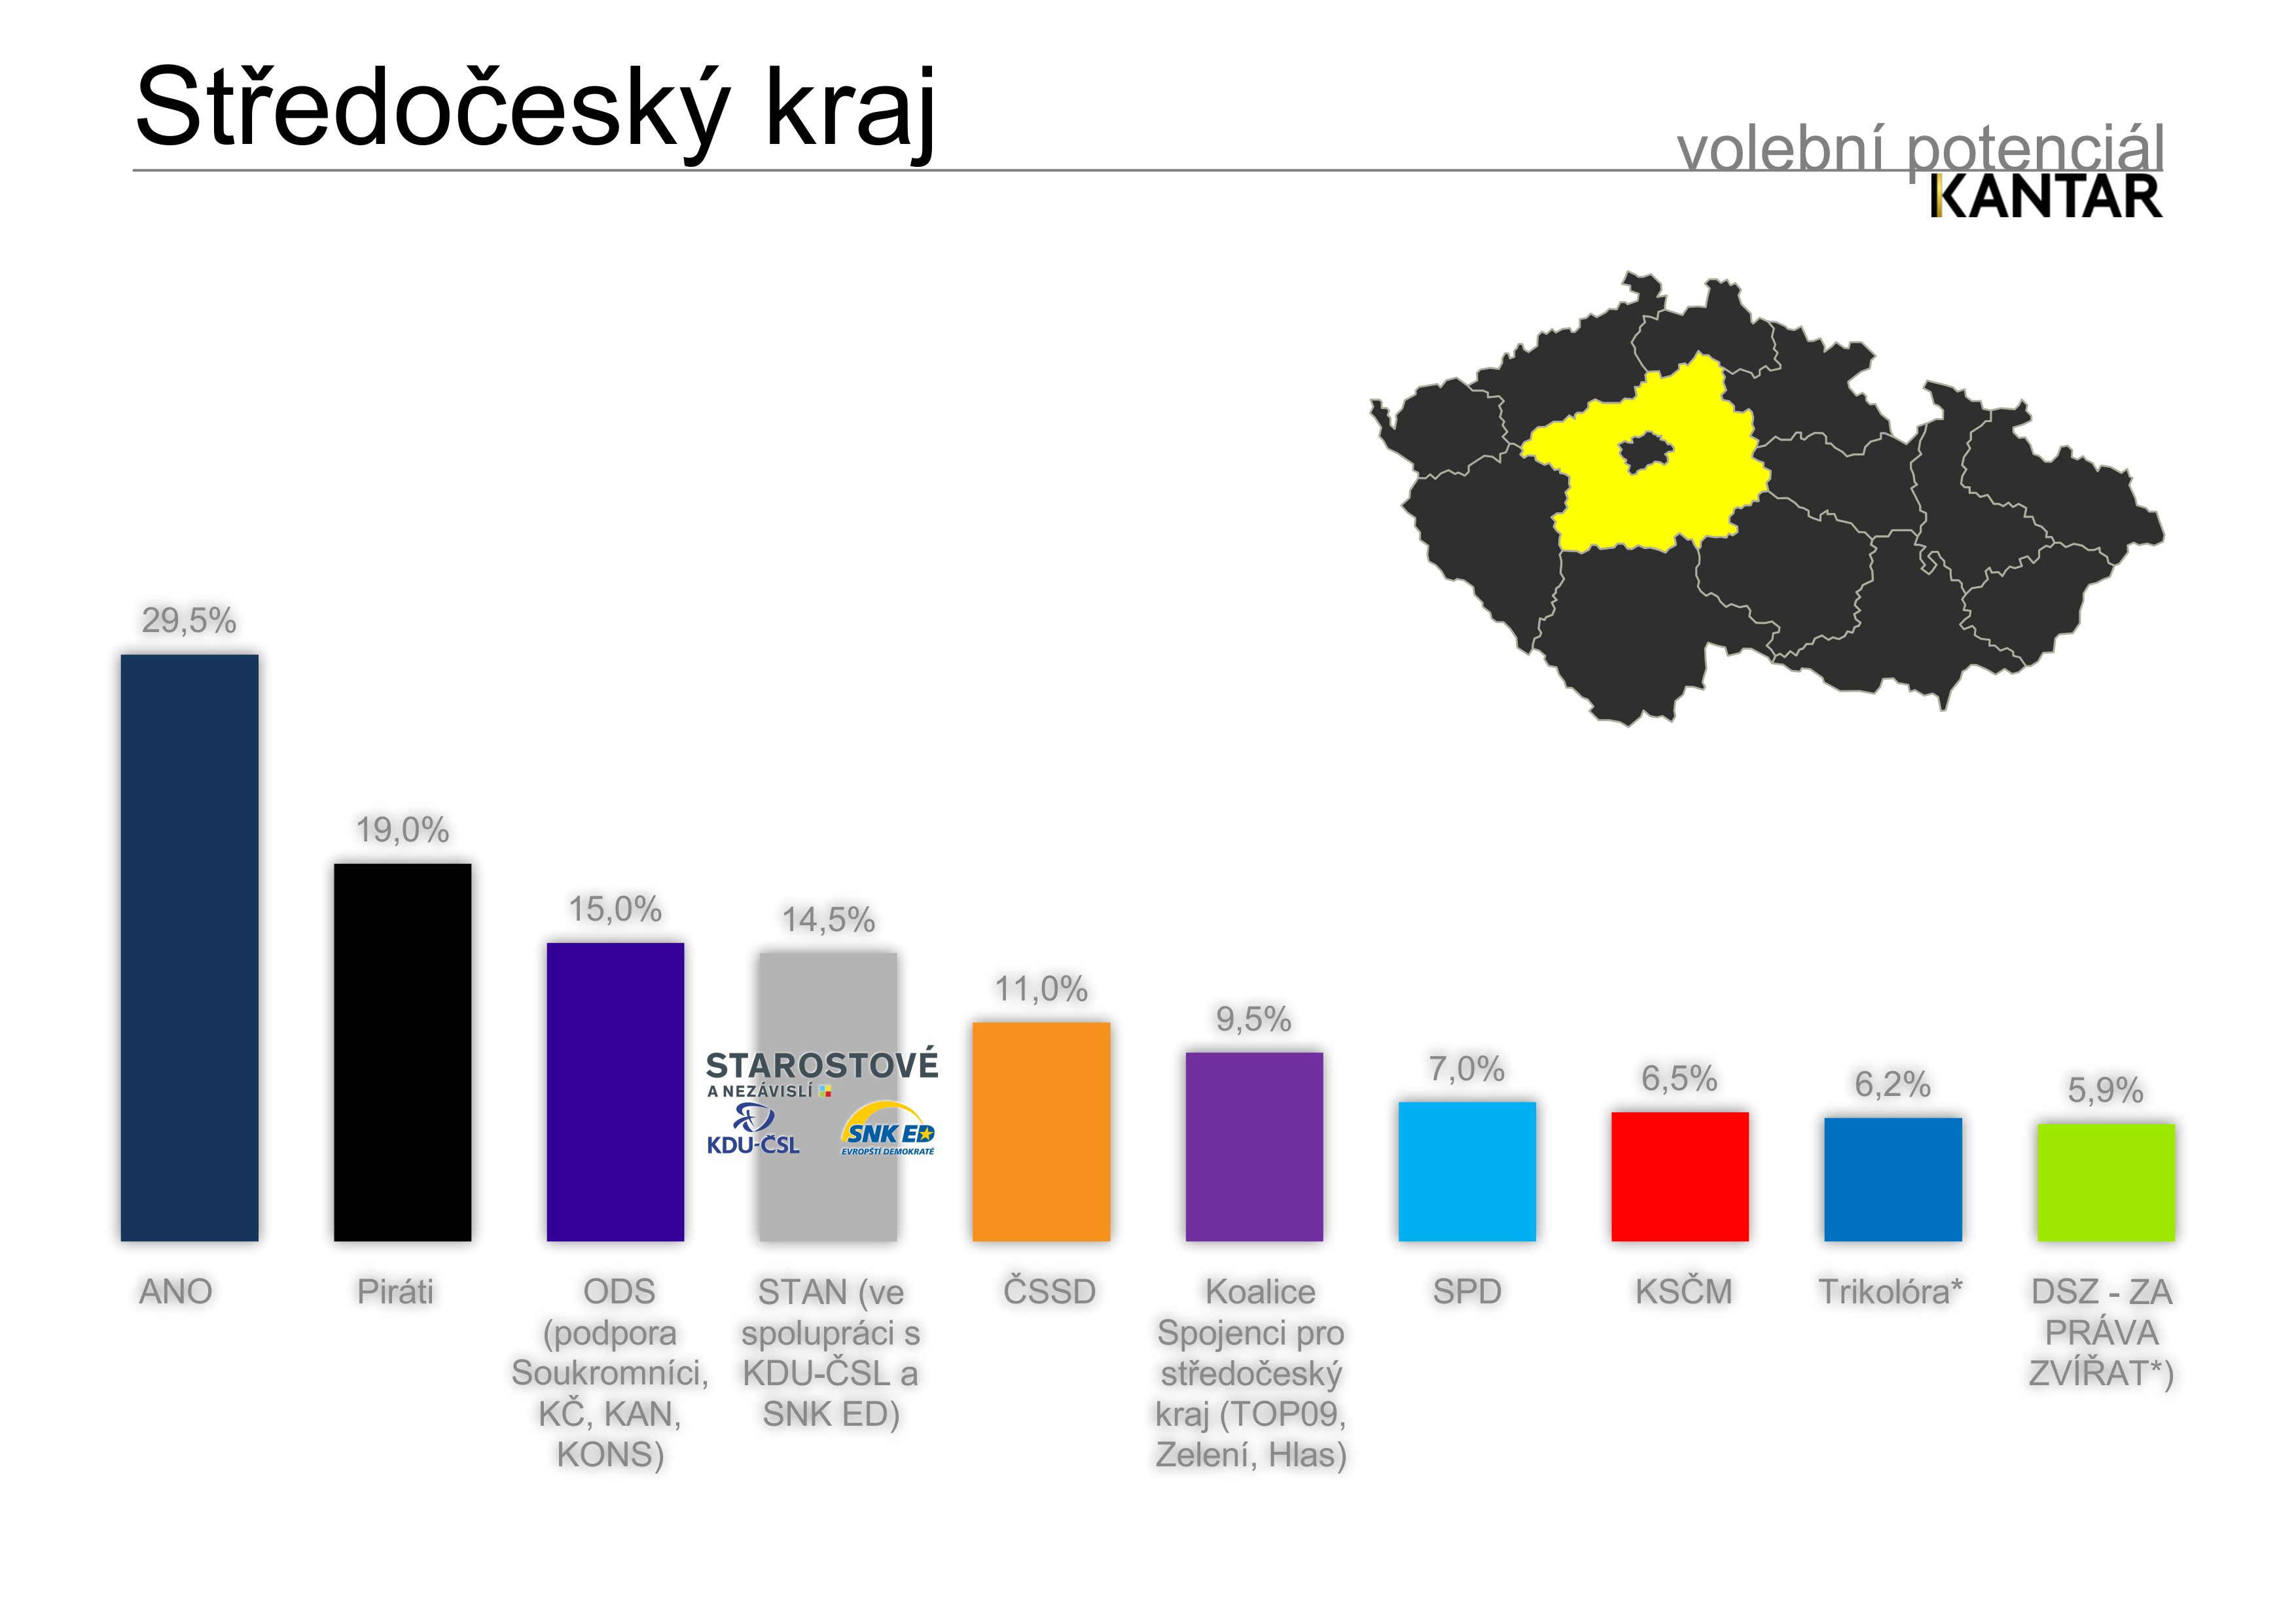 Volební potenciál - Středočeský kraj